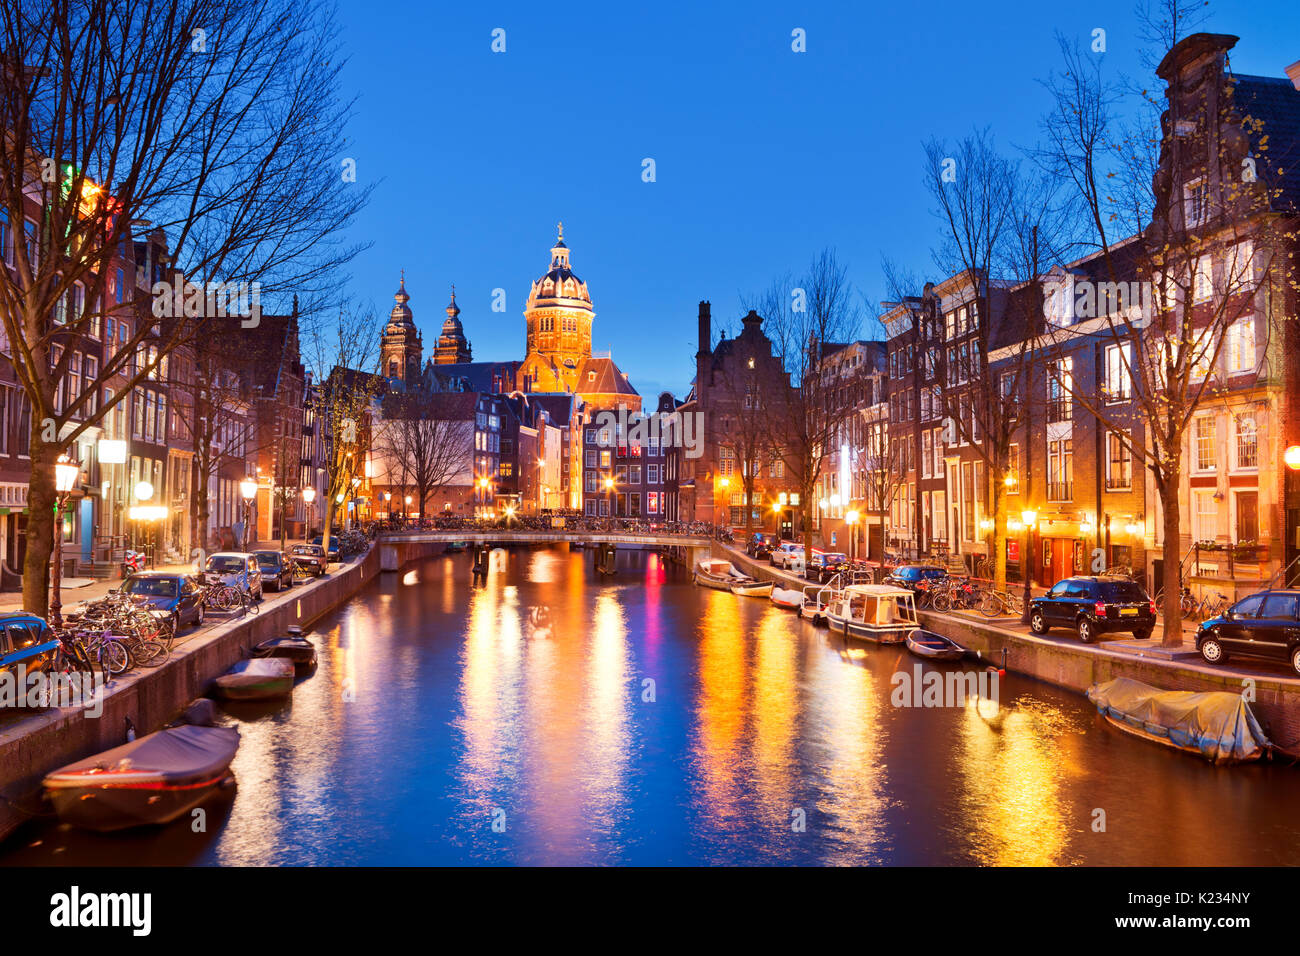 Un canale nel quartiere a luci rosse di Amsterdam, Paesi Bassi con la chiesa di San Nicola alla fine. Fotografato di notte. Foto Stock